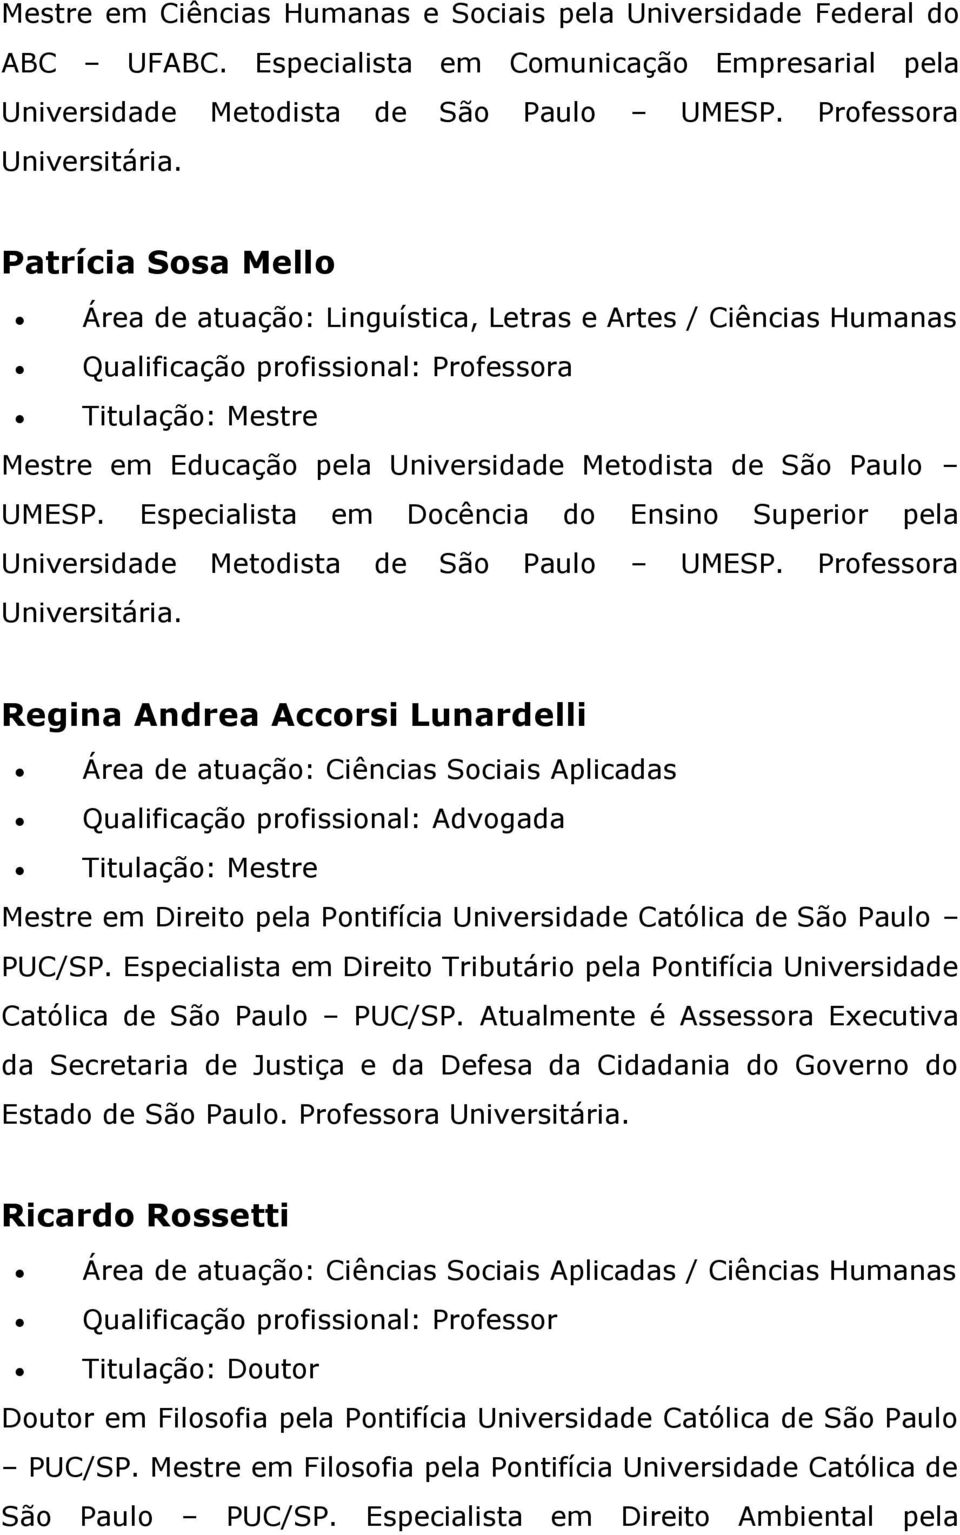 Especialista em Docência do Ensino Superior pela Universidade Metodista de São Paulo UMESP. Professora Universitária.